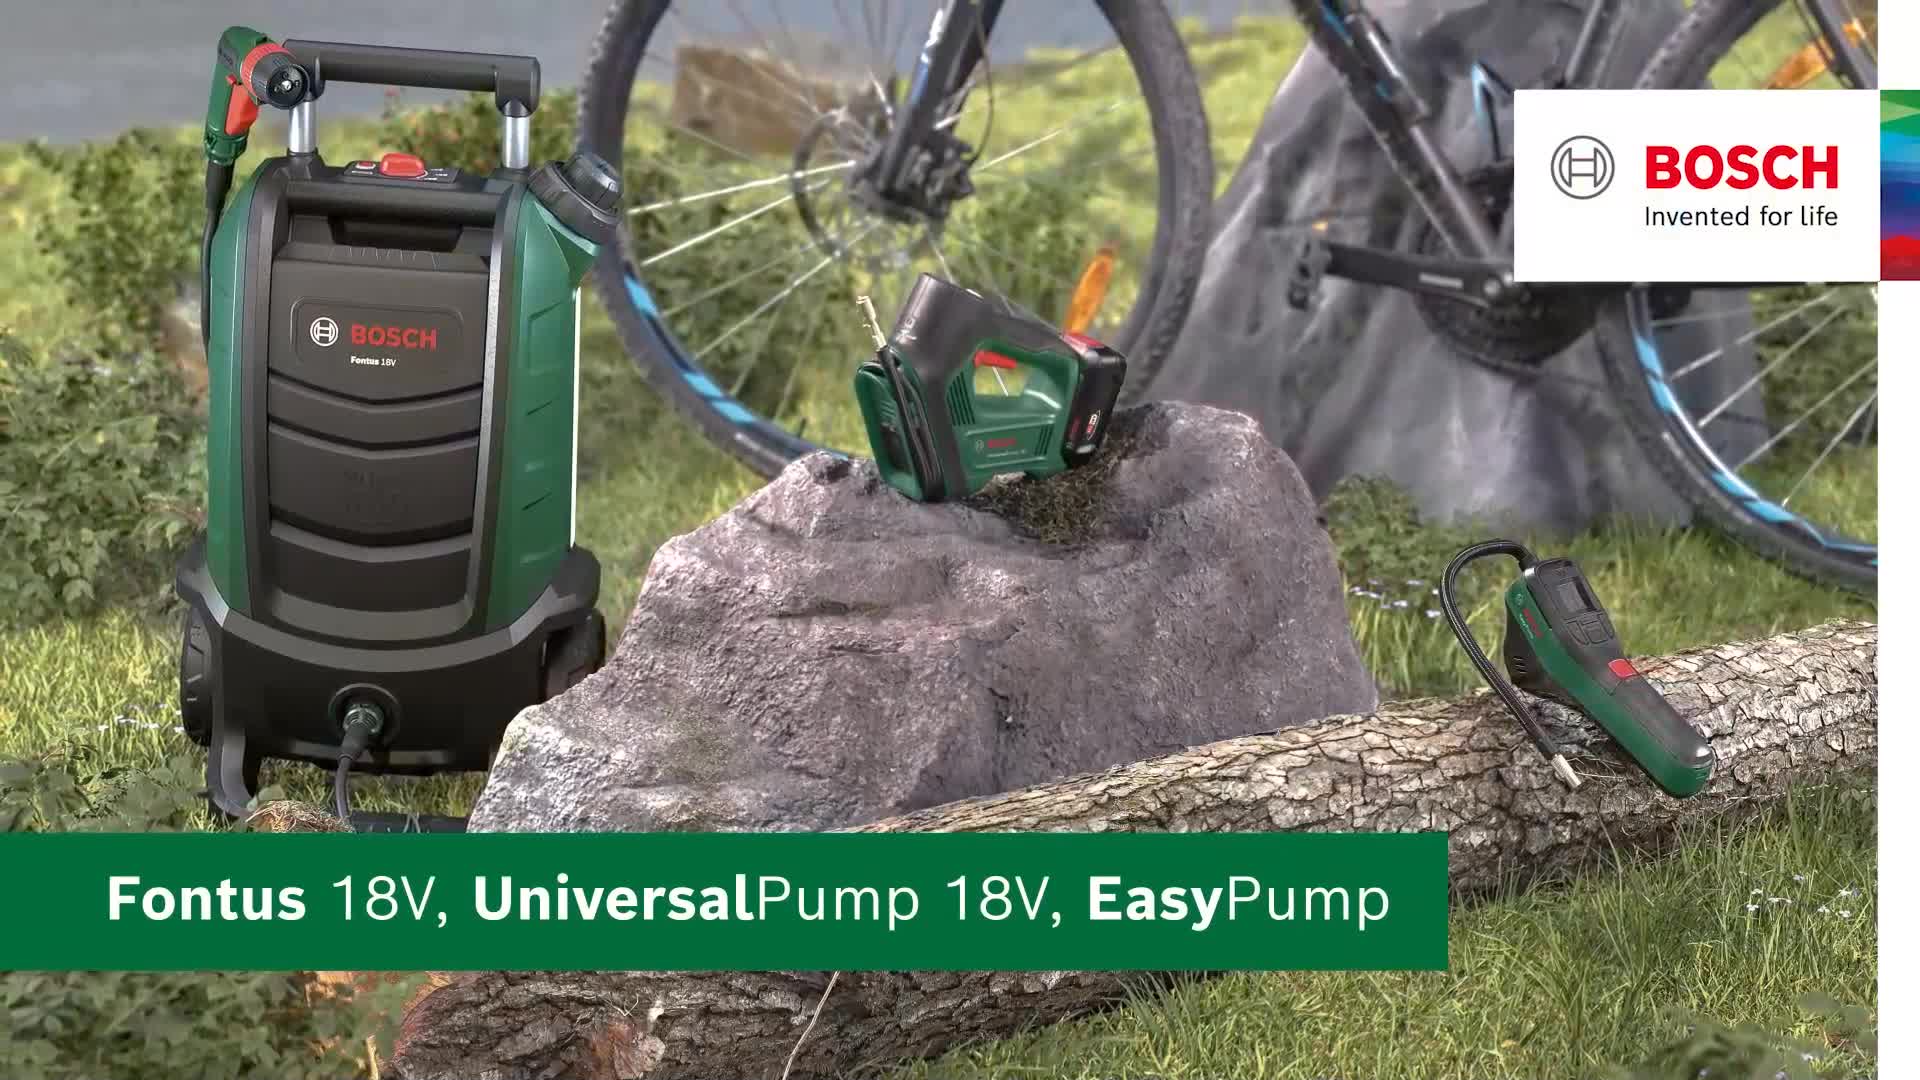 EasyPump Pompa ad aria compressa a batteria